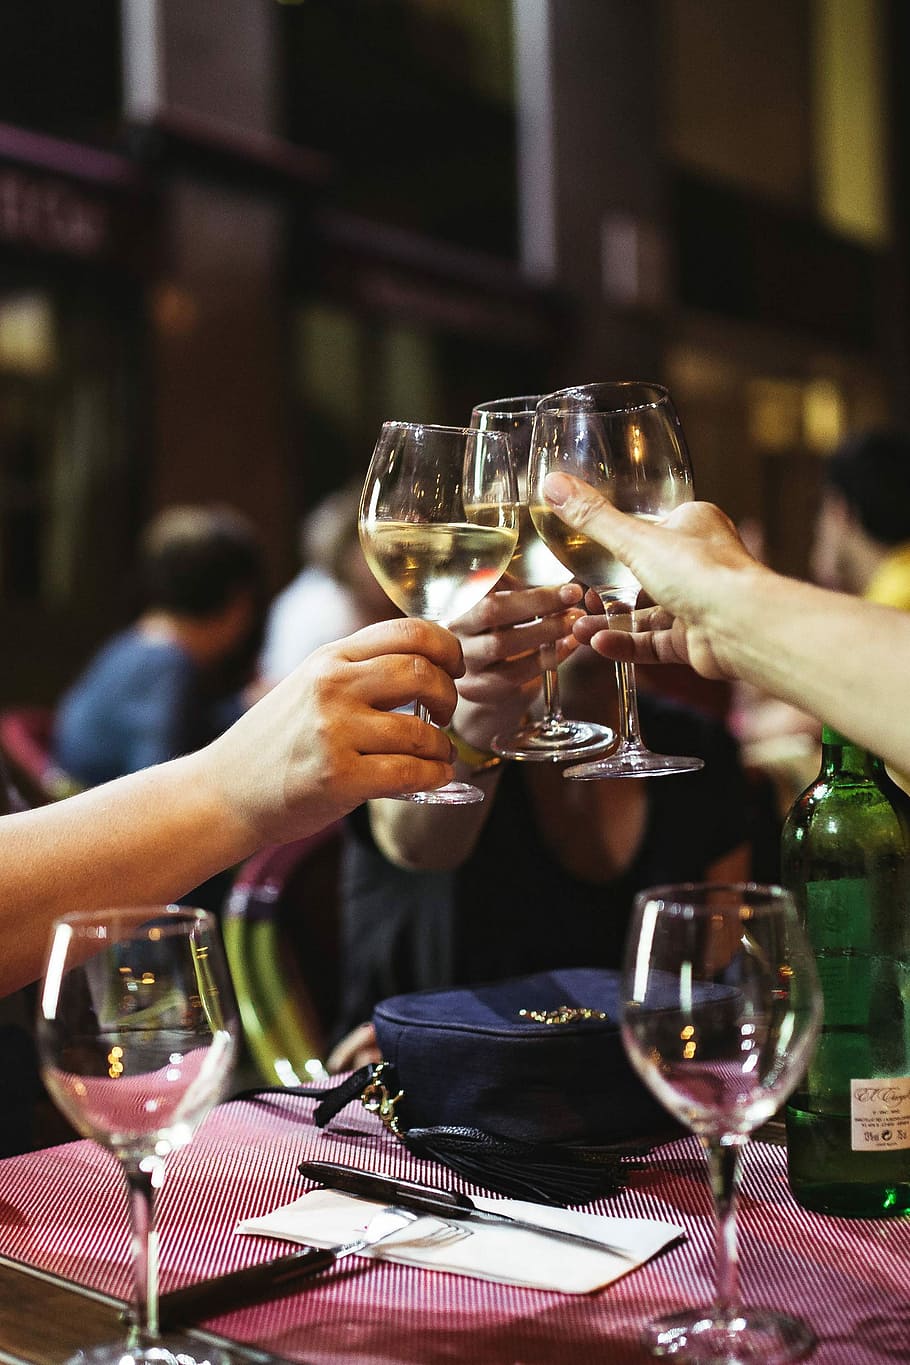 restaurant drinking wine, Friends, restaurant, drinking, wine, evening, fun, happy, women, dinner